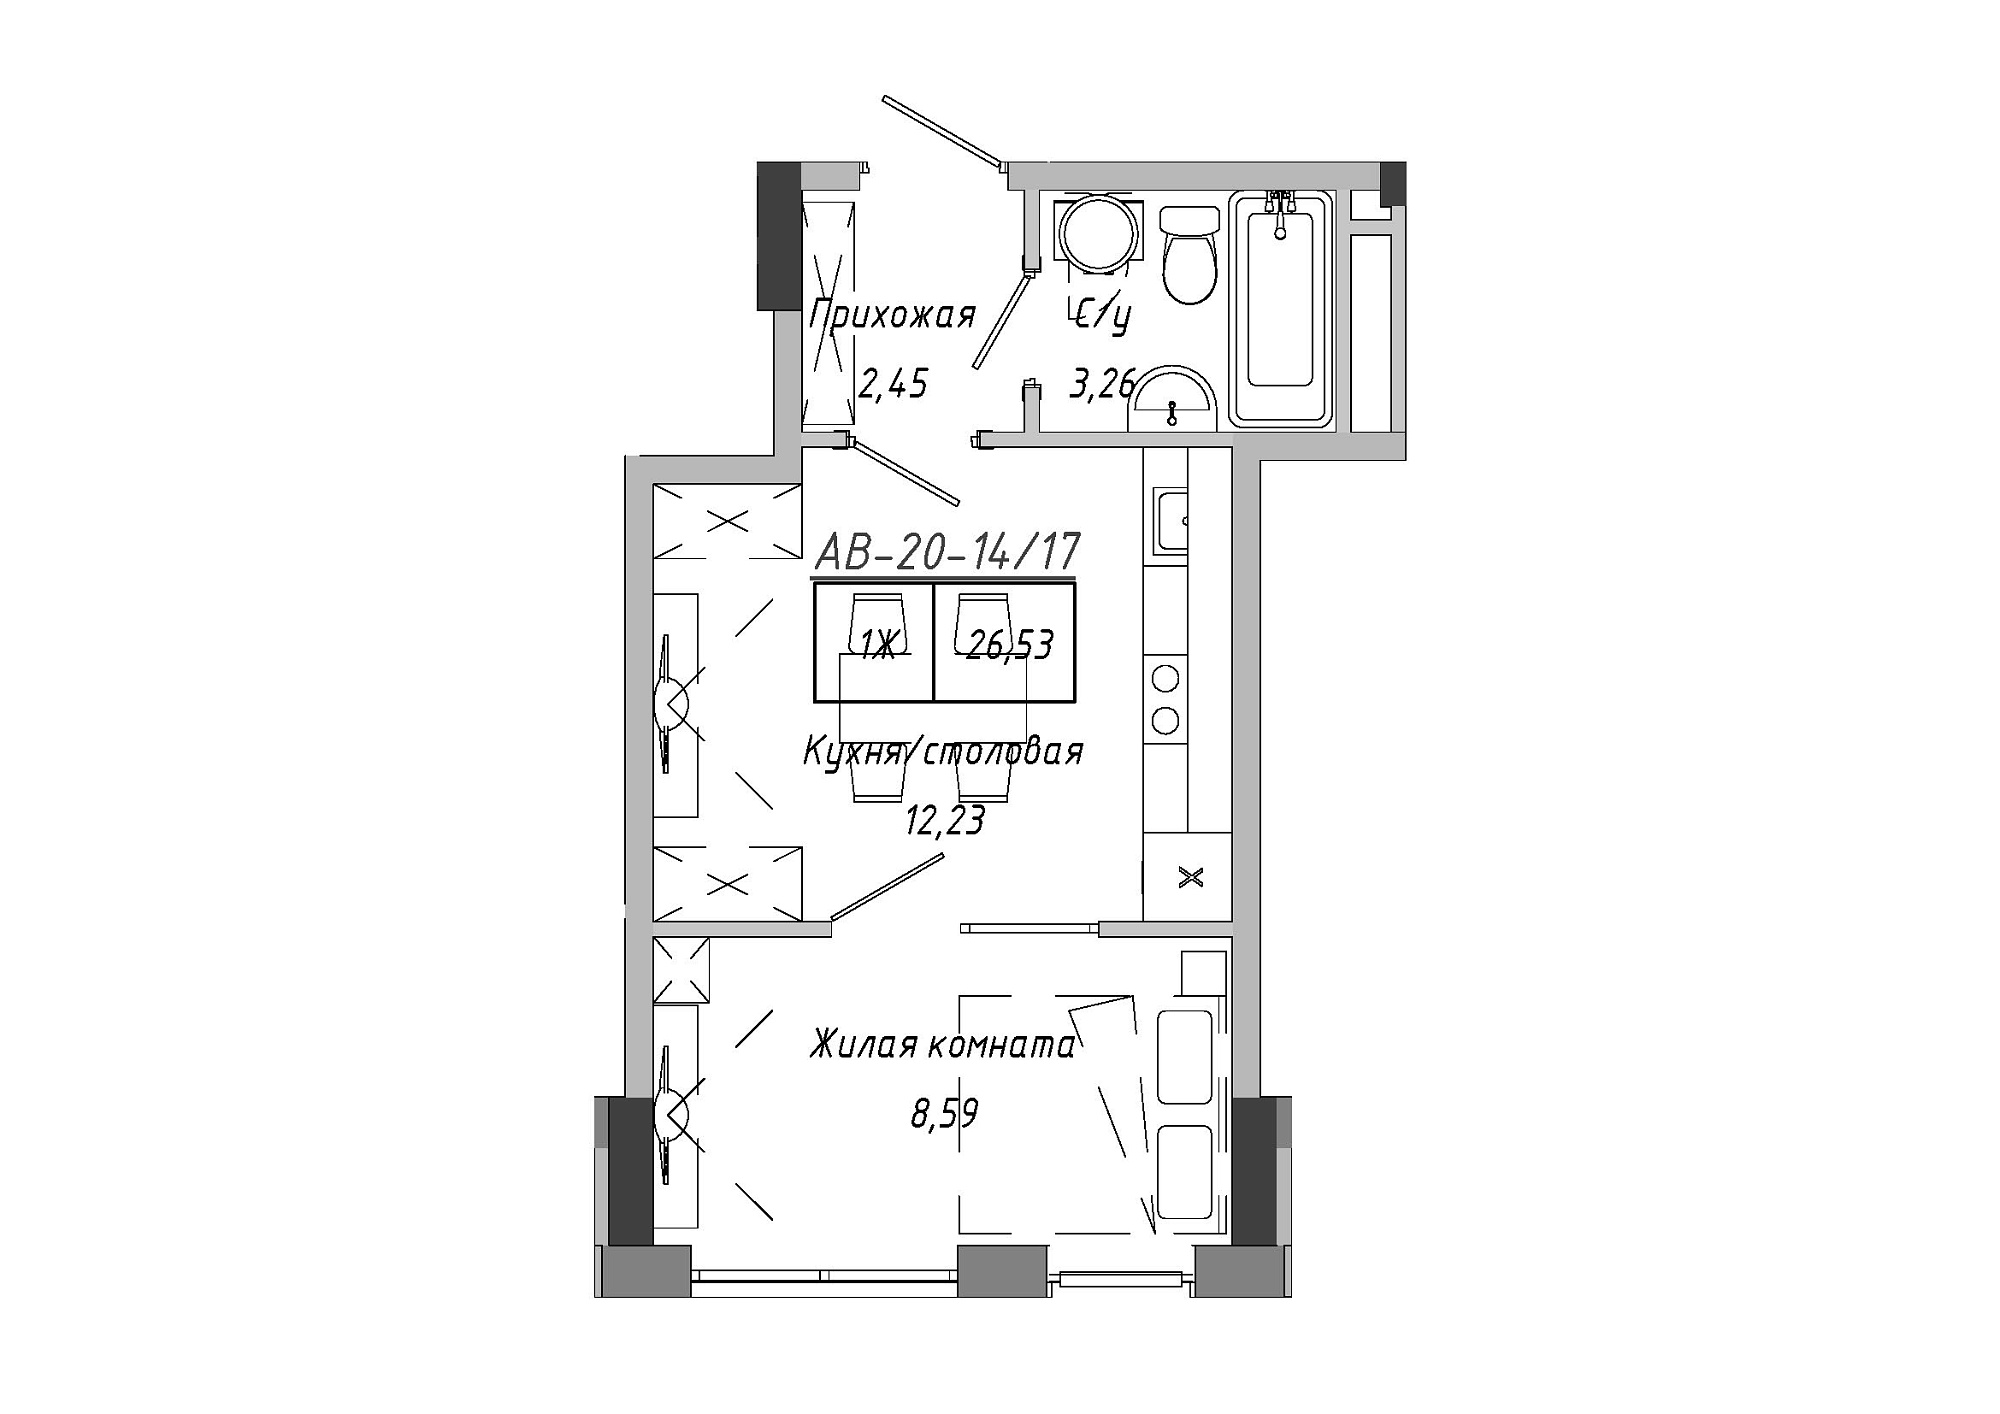 Планування 1-к квартира площею 26.53м2, AB-20-14/00117.